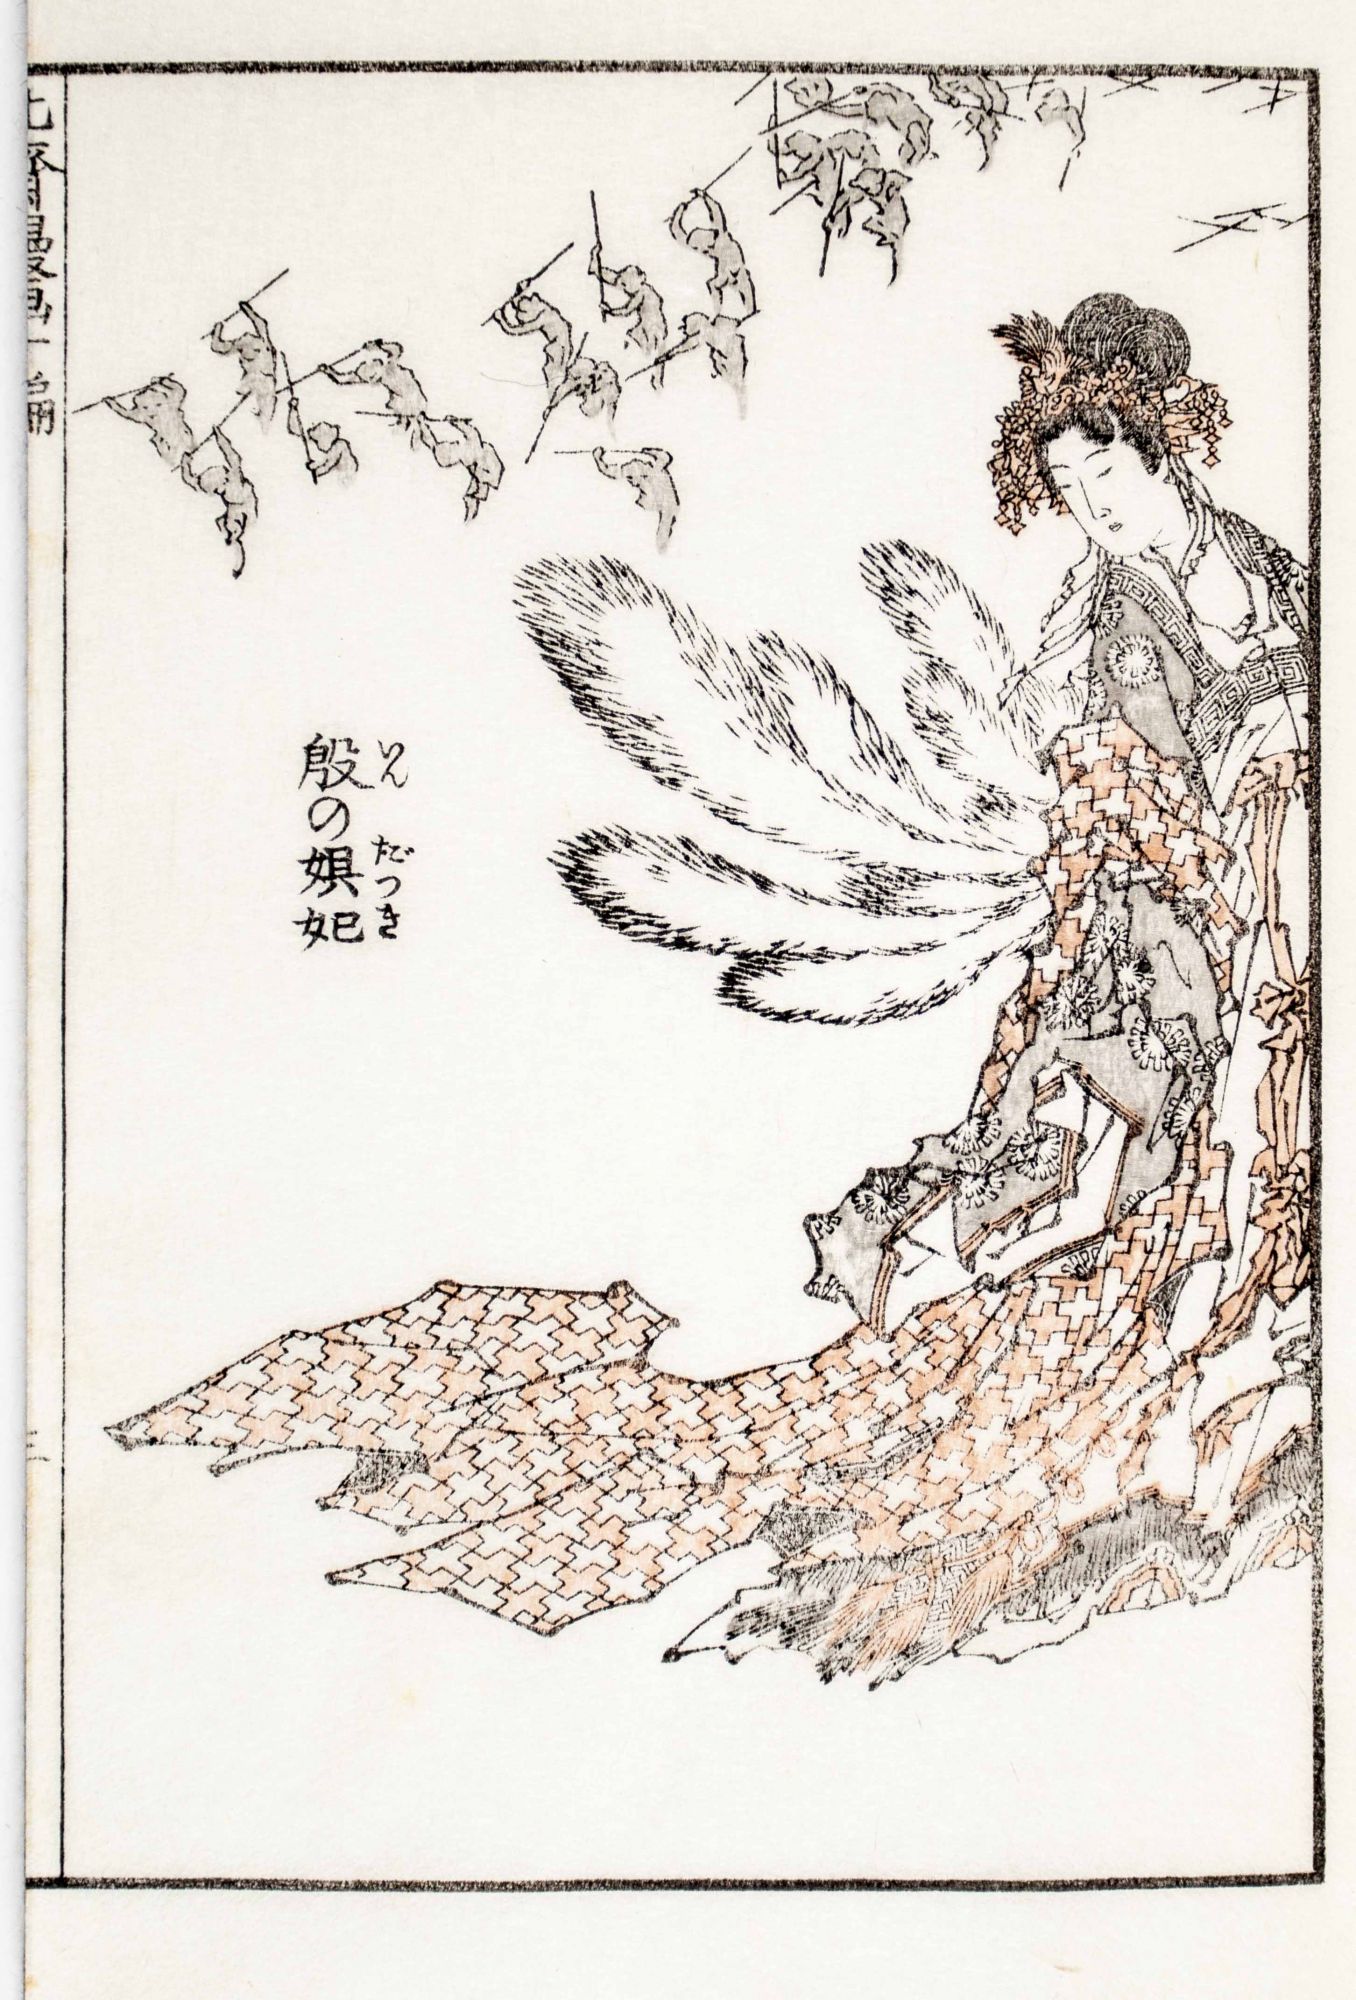 Hokusai School Sketchbook: Japanese Inkwash Drawings c .1830 - 1850  (Paperback)